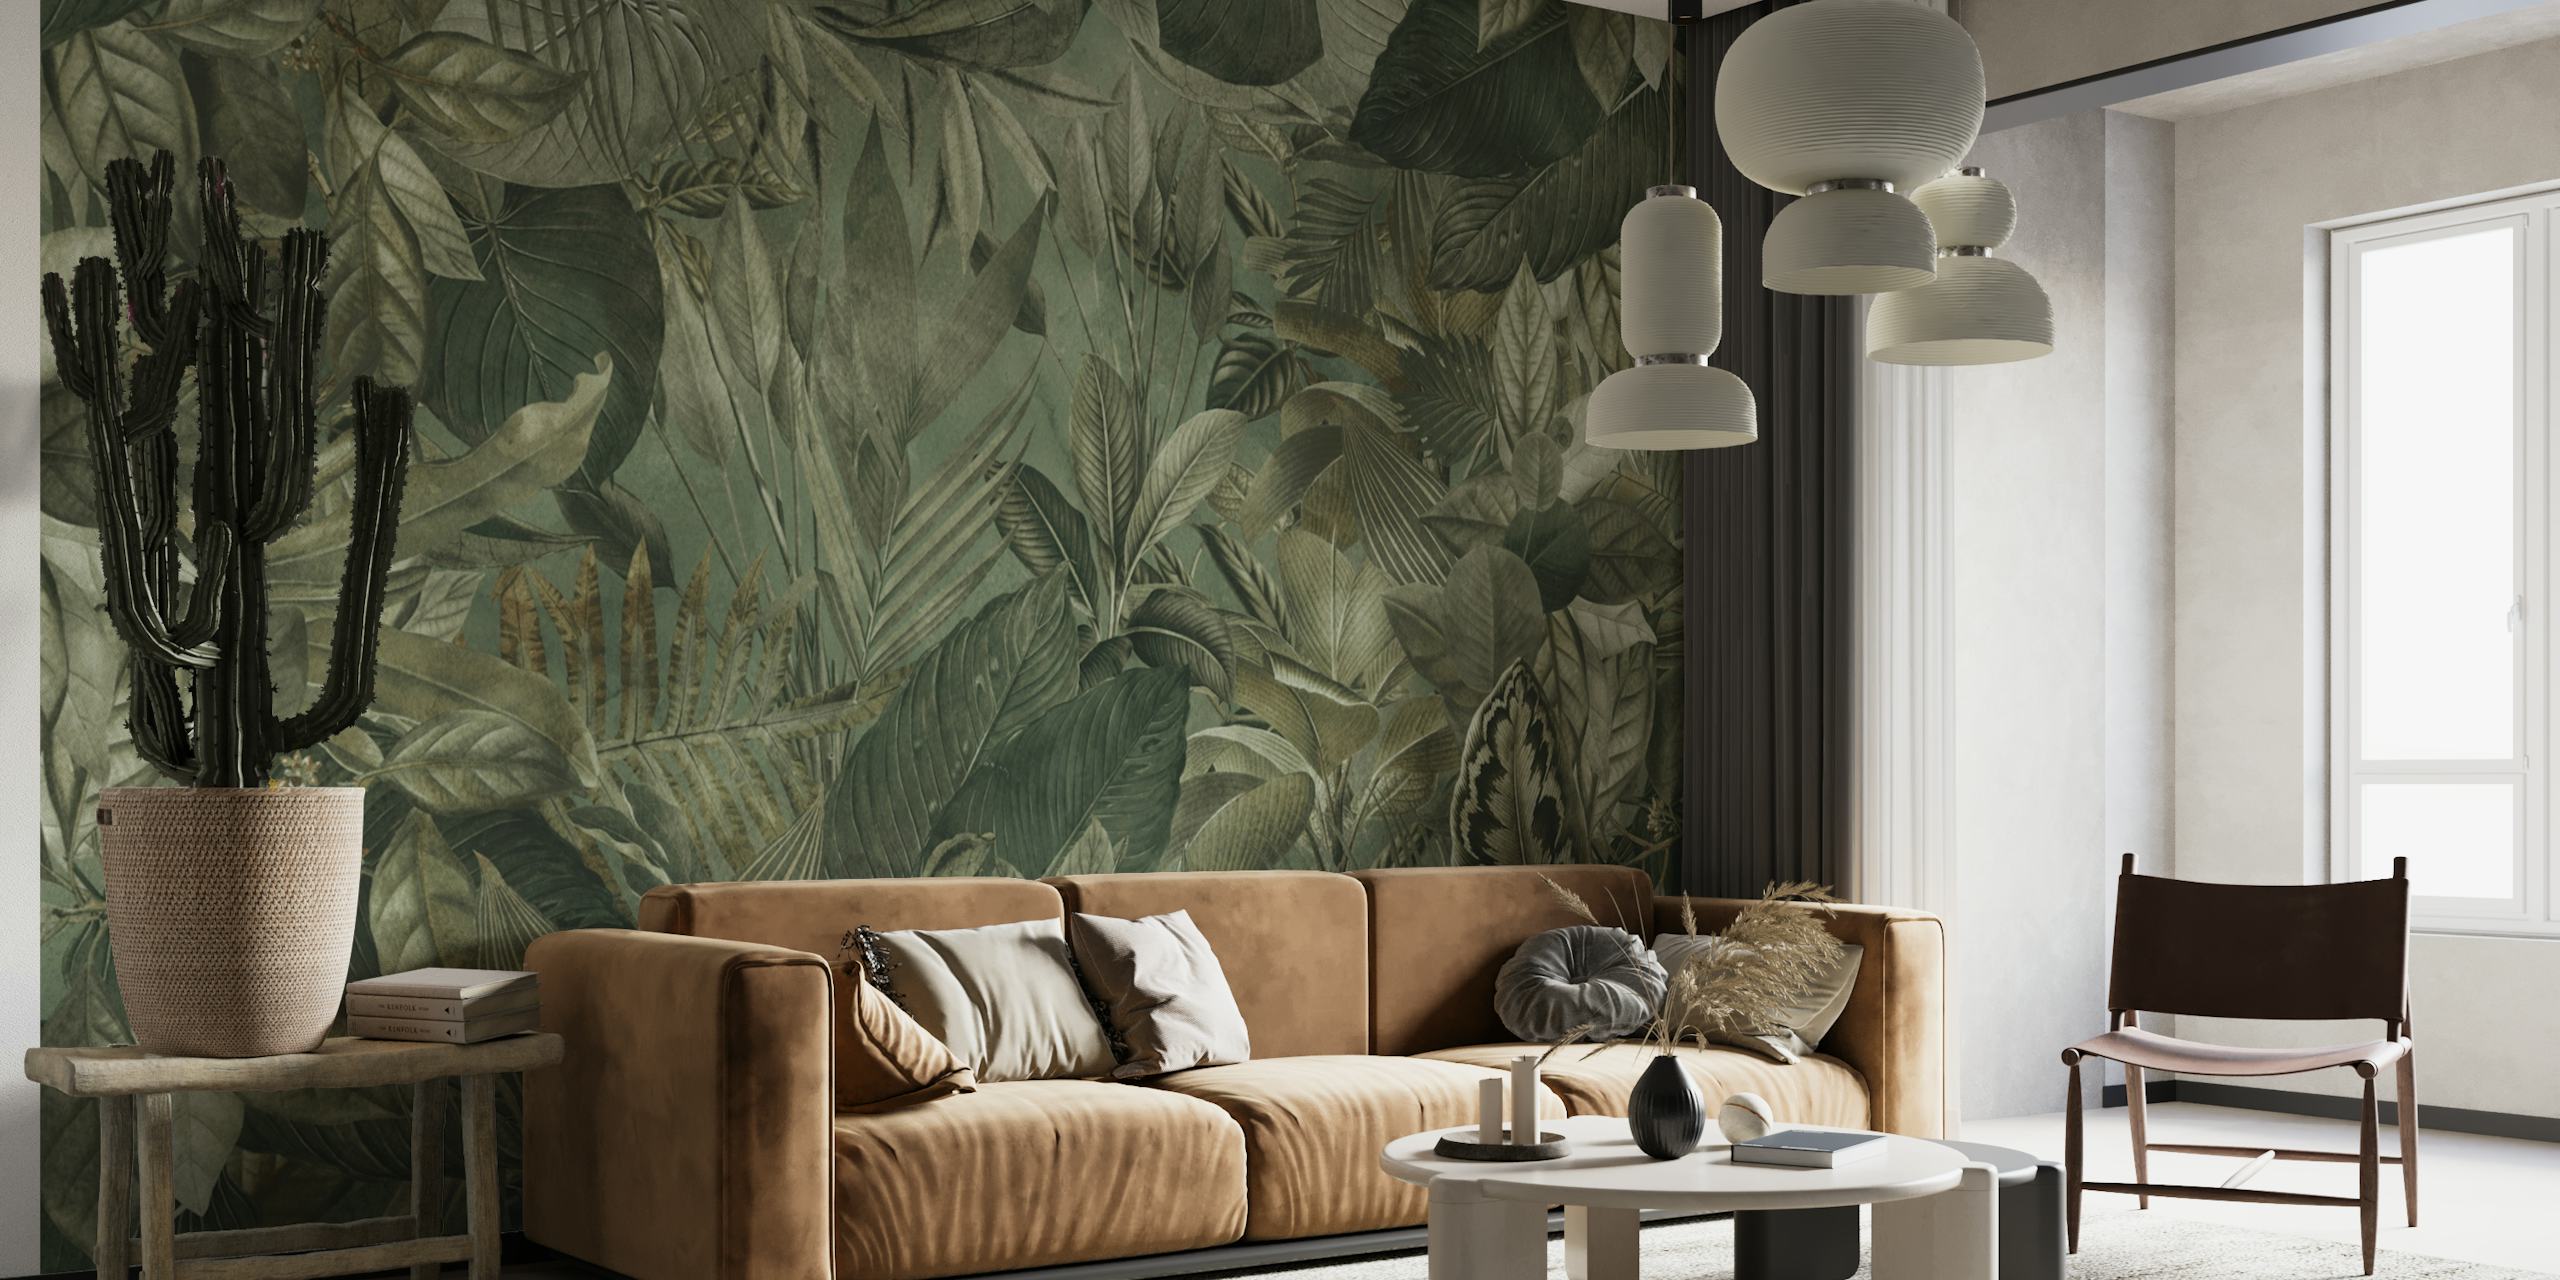 Tropische muurschildering met jungle-thema met olijfgroen gebladerte en botanische elementen.